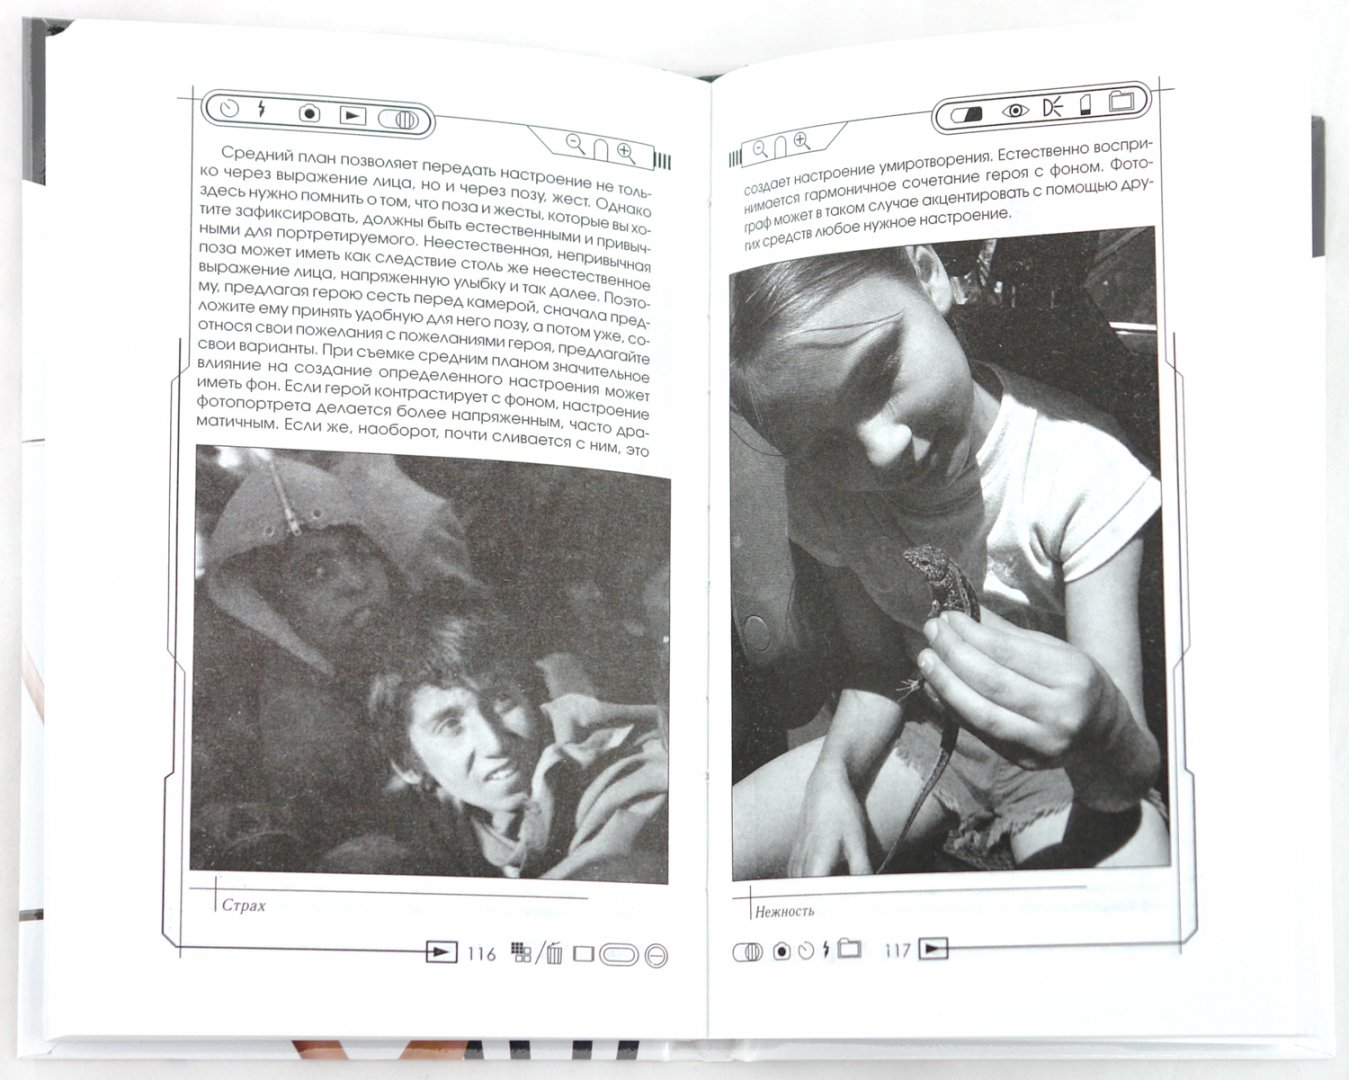 Иллюстрация 1 из 6 для Все секреты портретной фотографии - Мирослав Адамчик | Лабиринт - книги. Источник: Лабиринт